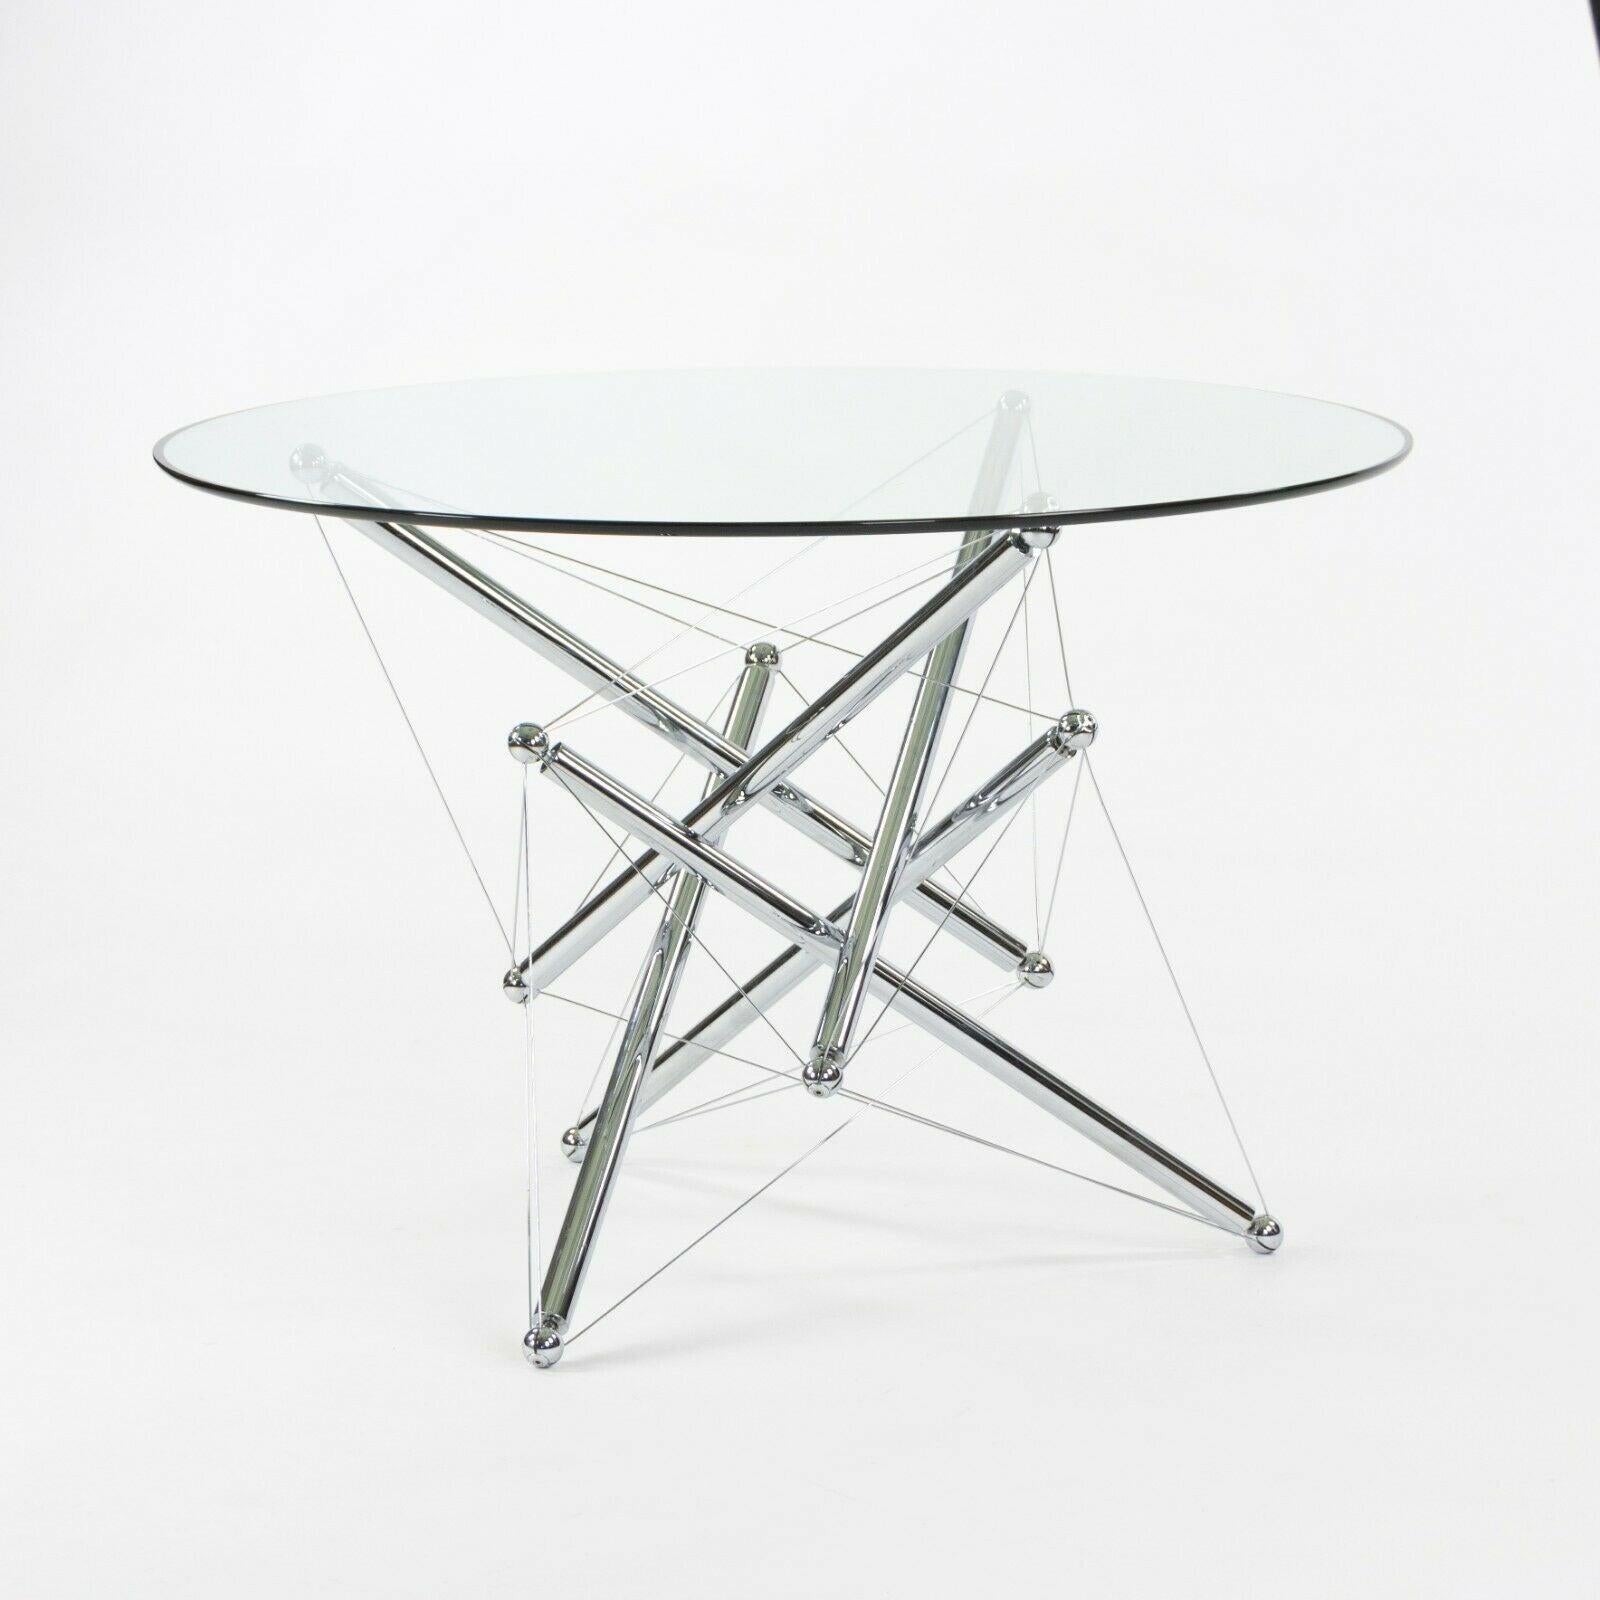 Zum Verkauf steht ein wunderschöner und origineller Esstisch 714, hergestellt von Cassina. Dieser Tisch wurde von Theodore Waddell entworfen, der sich dabei von Buckminster Fullers Zug- und Tensegrity-Strukturen inspirieren ließ. Der Sockel wirkt